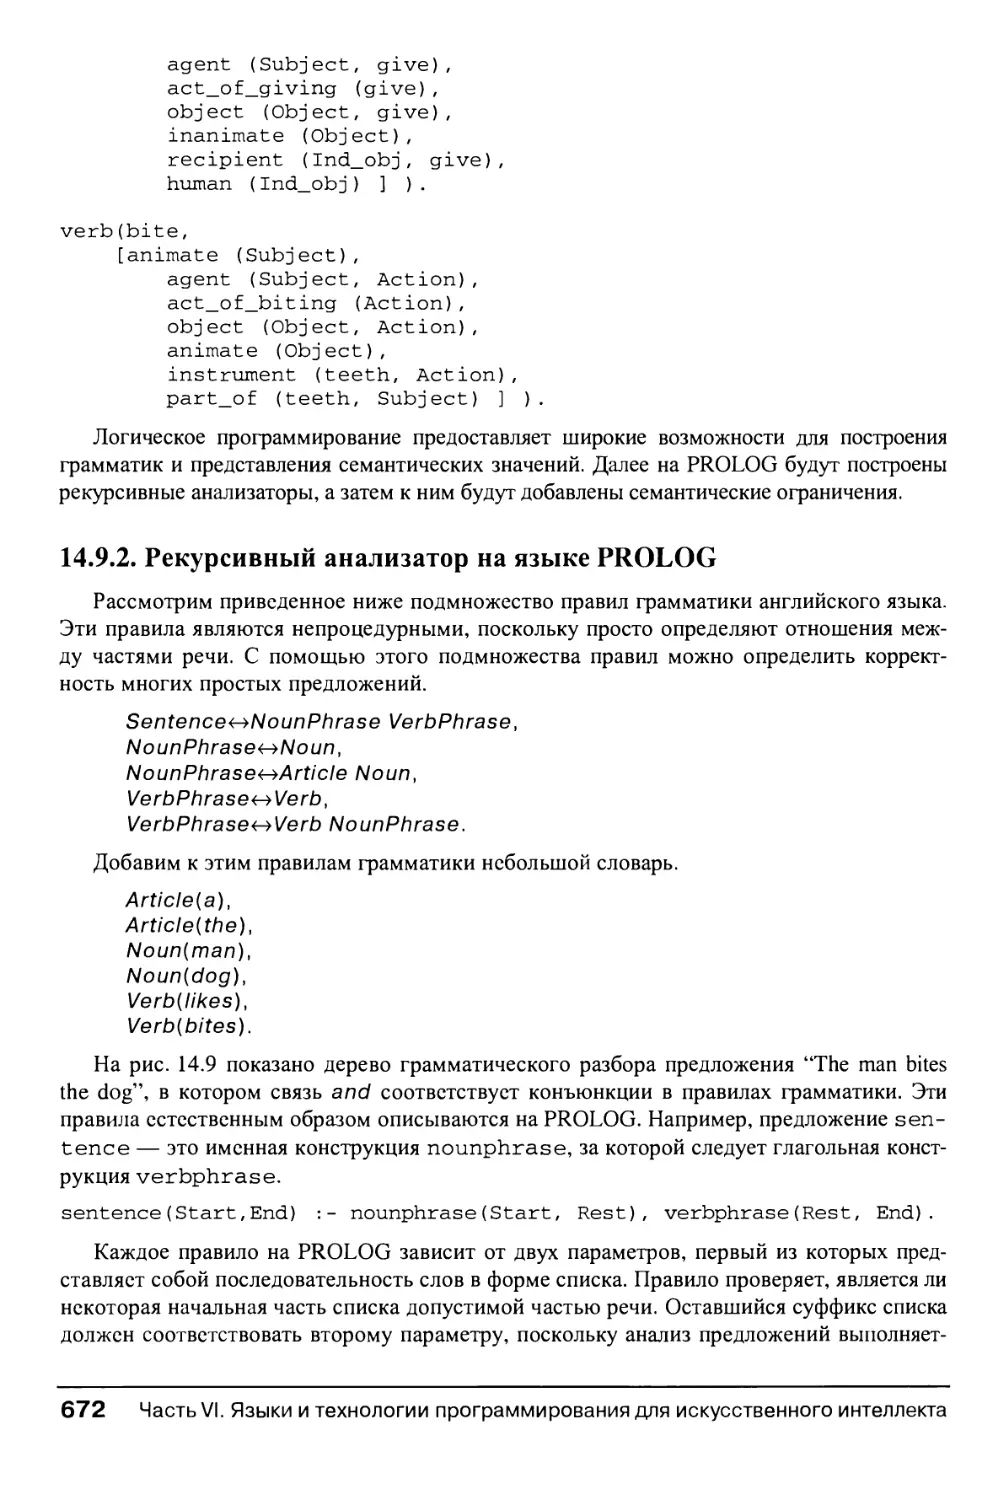 14.9.2. Рекурсивный анализатор на языке PROLOG